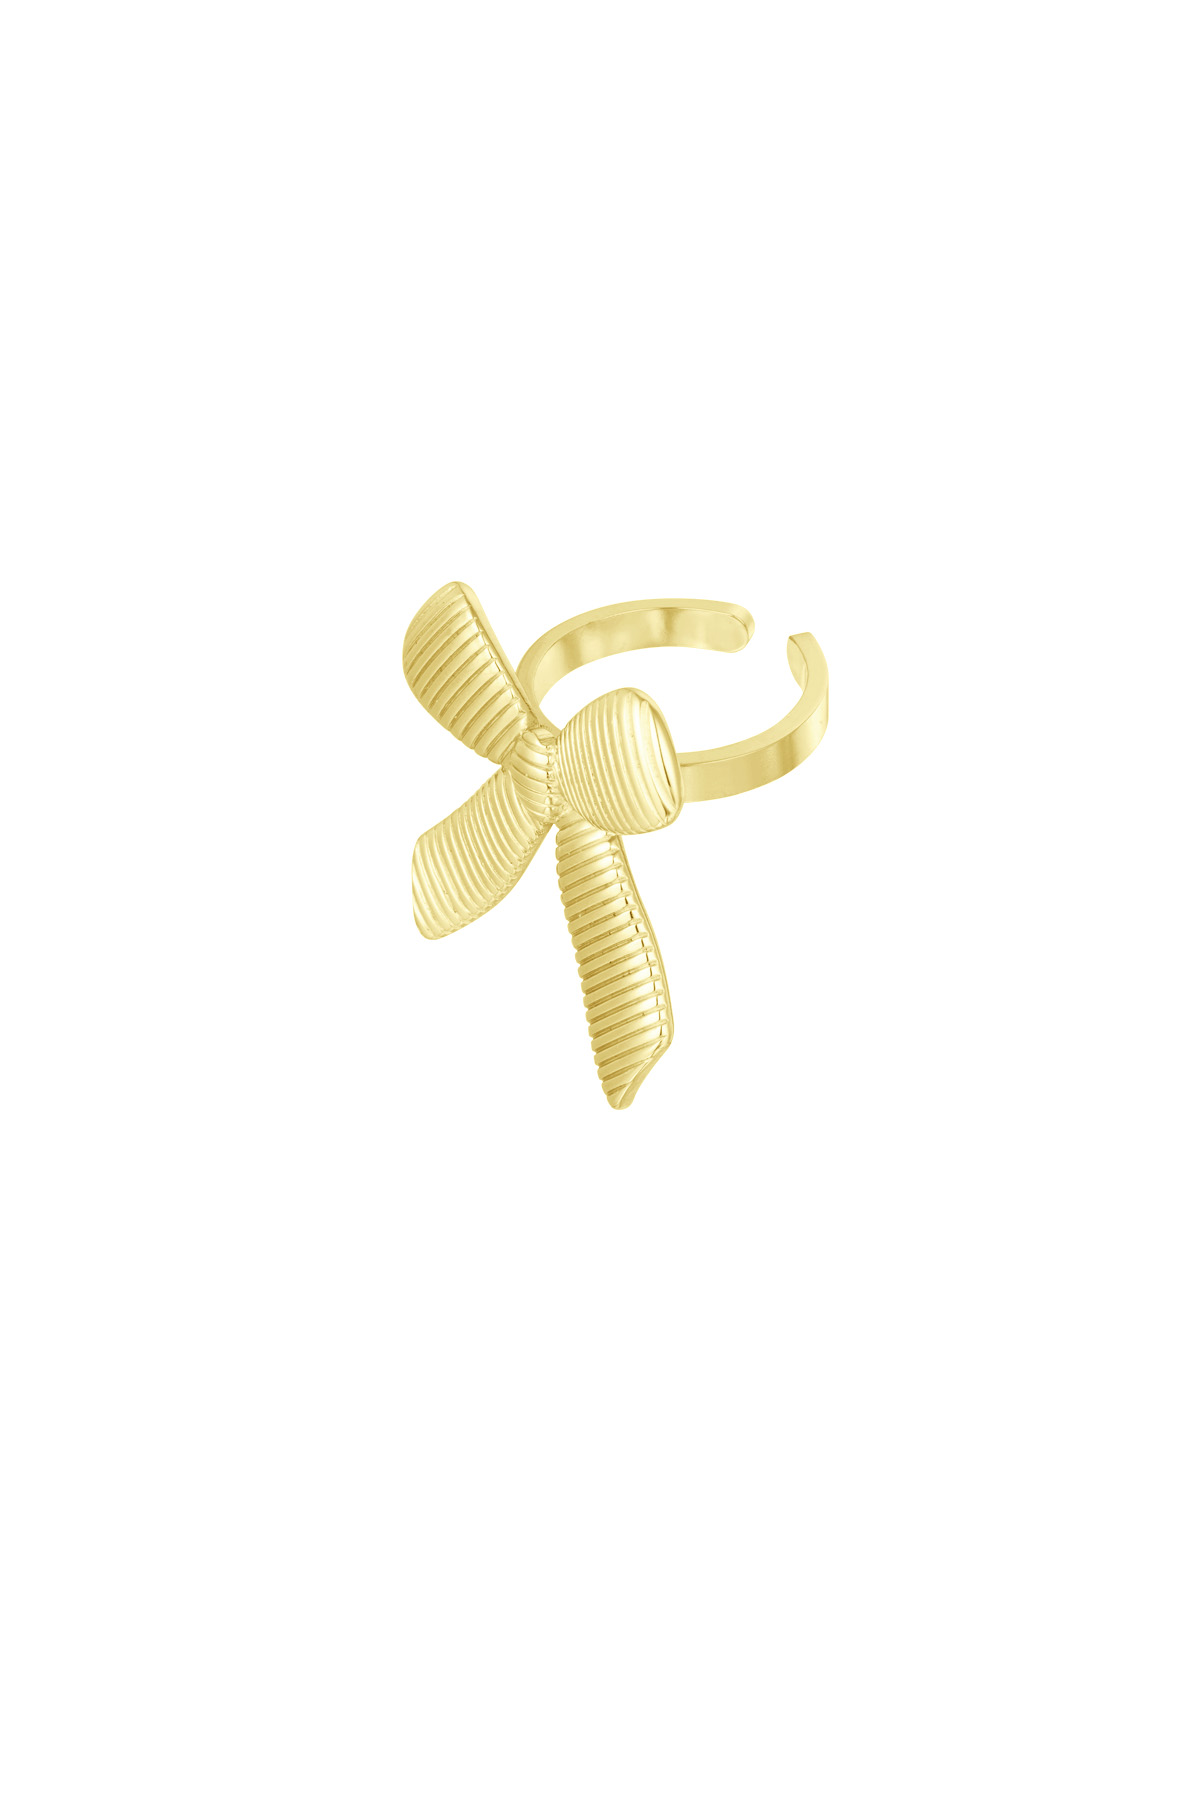 Simpele ring met strik - goud 